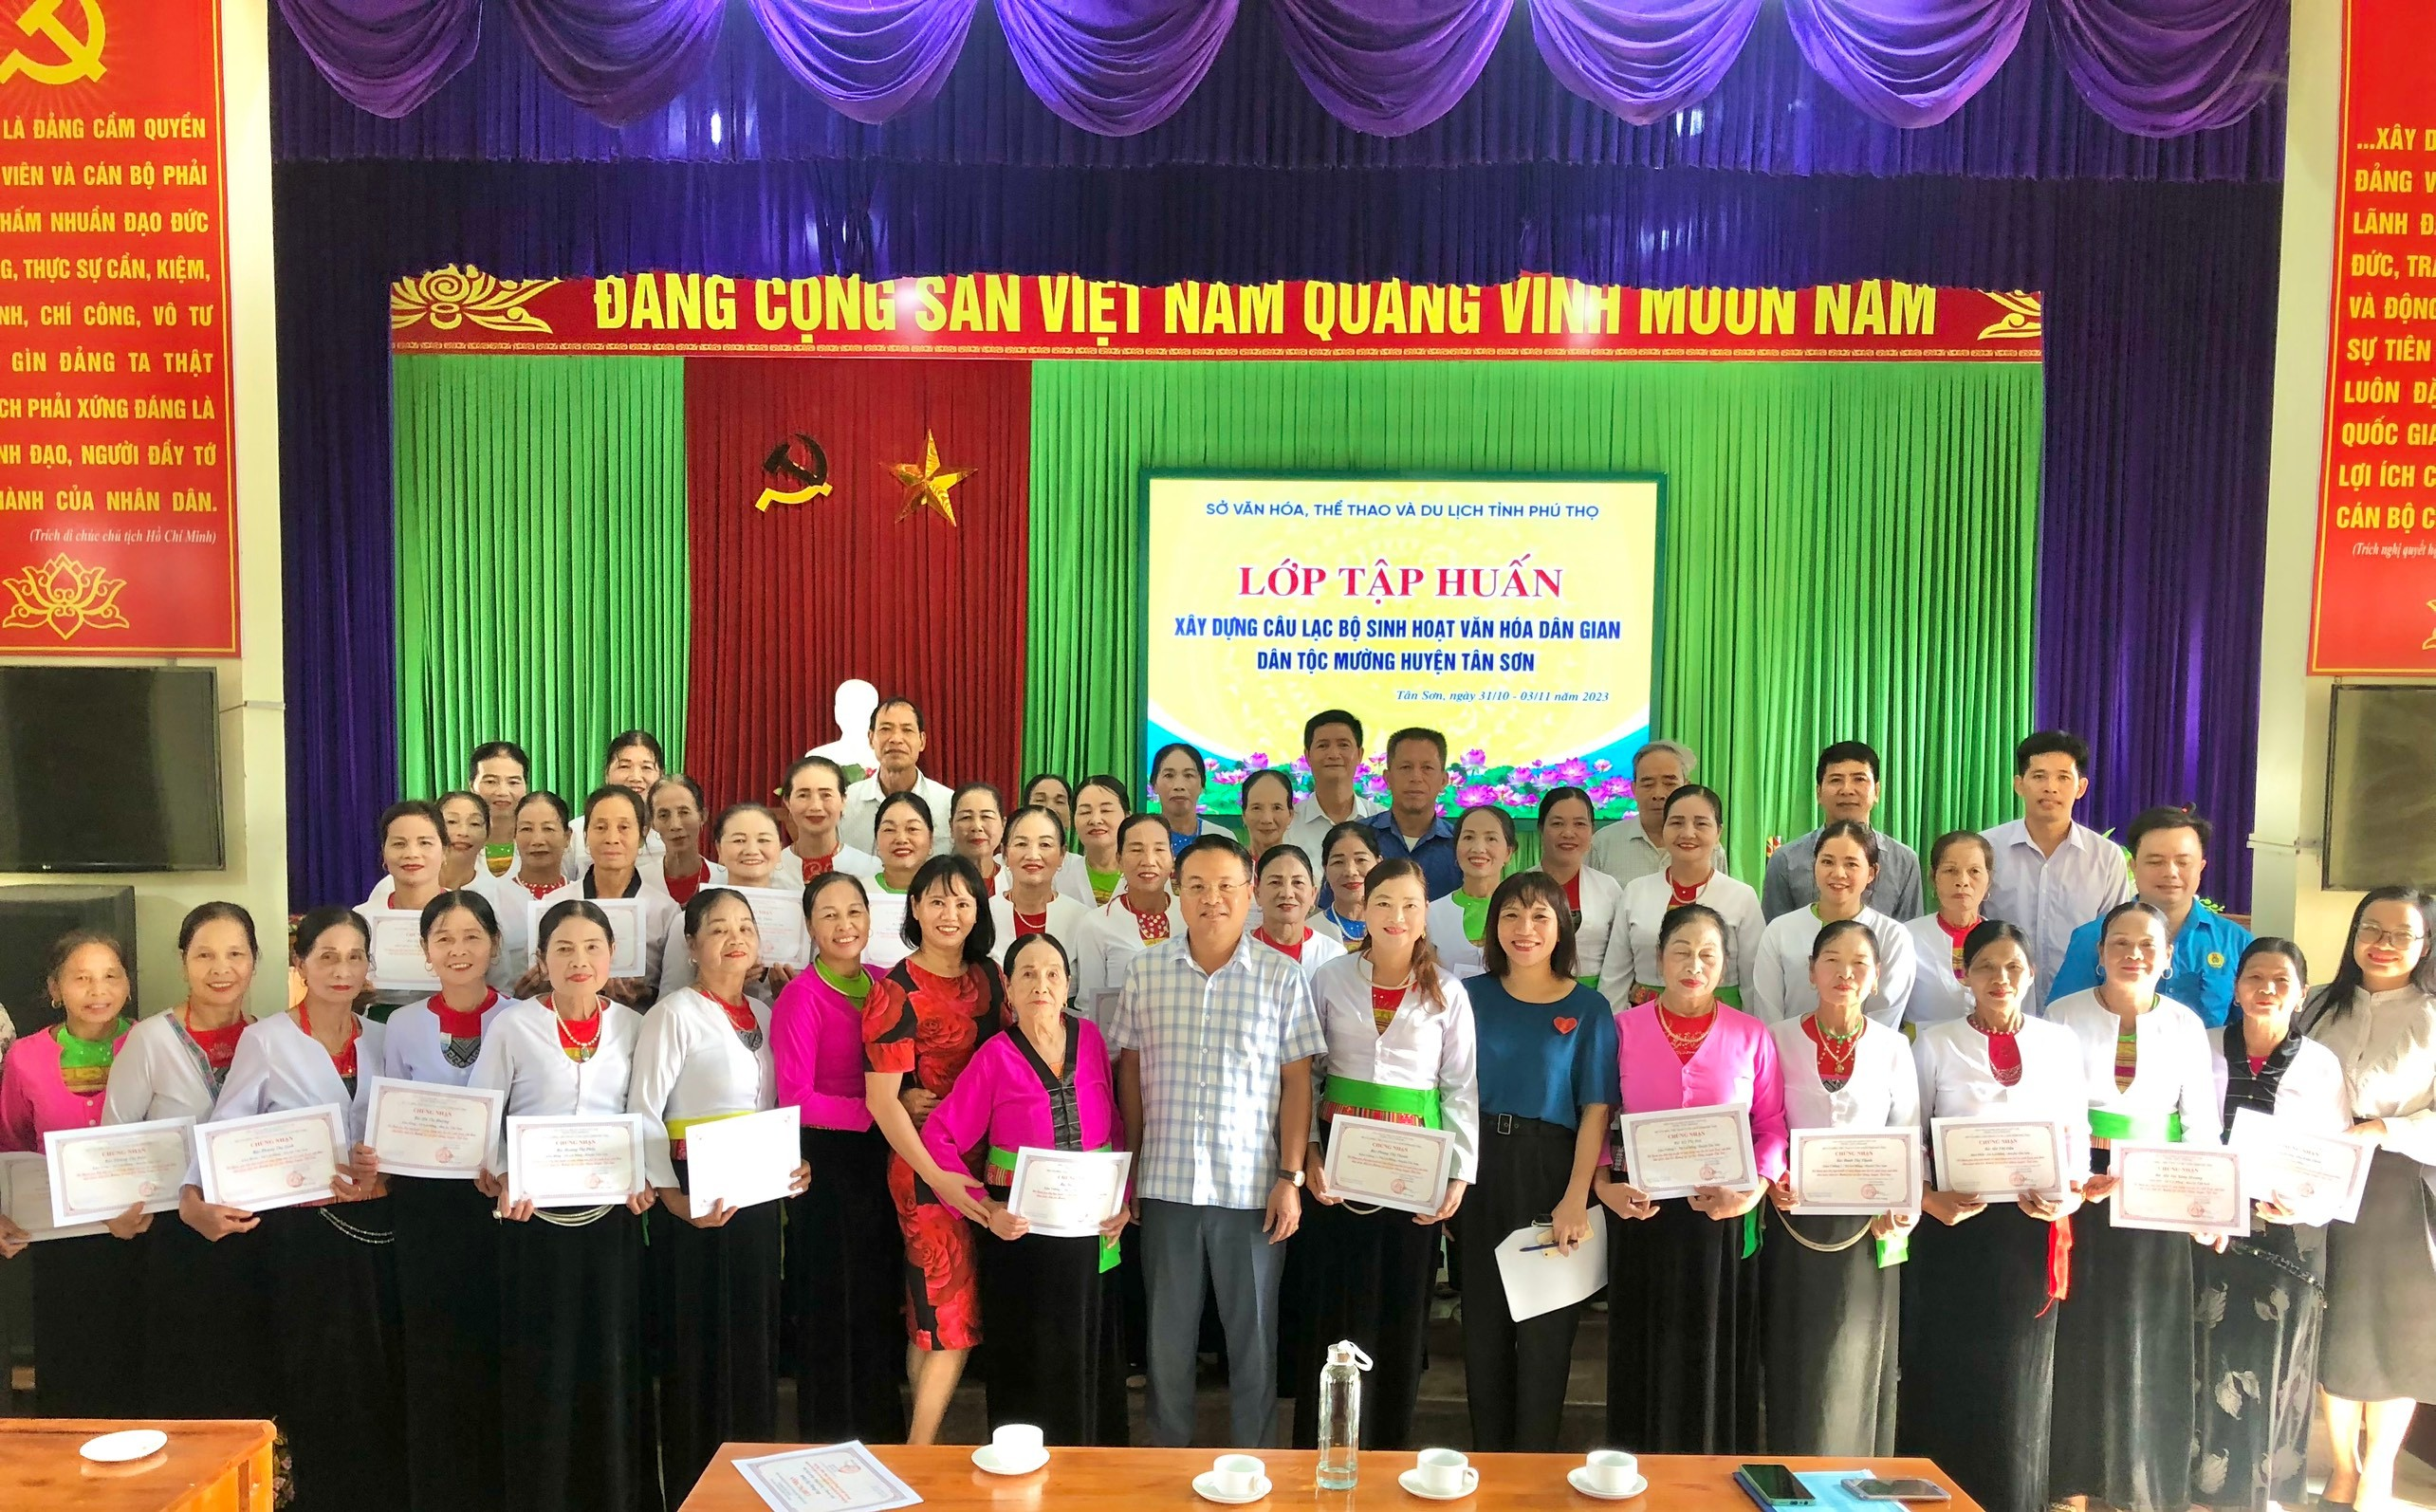 Tổ chức lớp tập huấn xây dựng câu lạc bộ sinh hoạt văn hóa dân gian dân tộc Mường tại xã Lai Đồng, huyện Tân Sơn